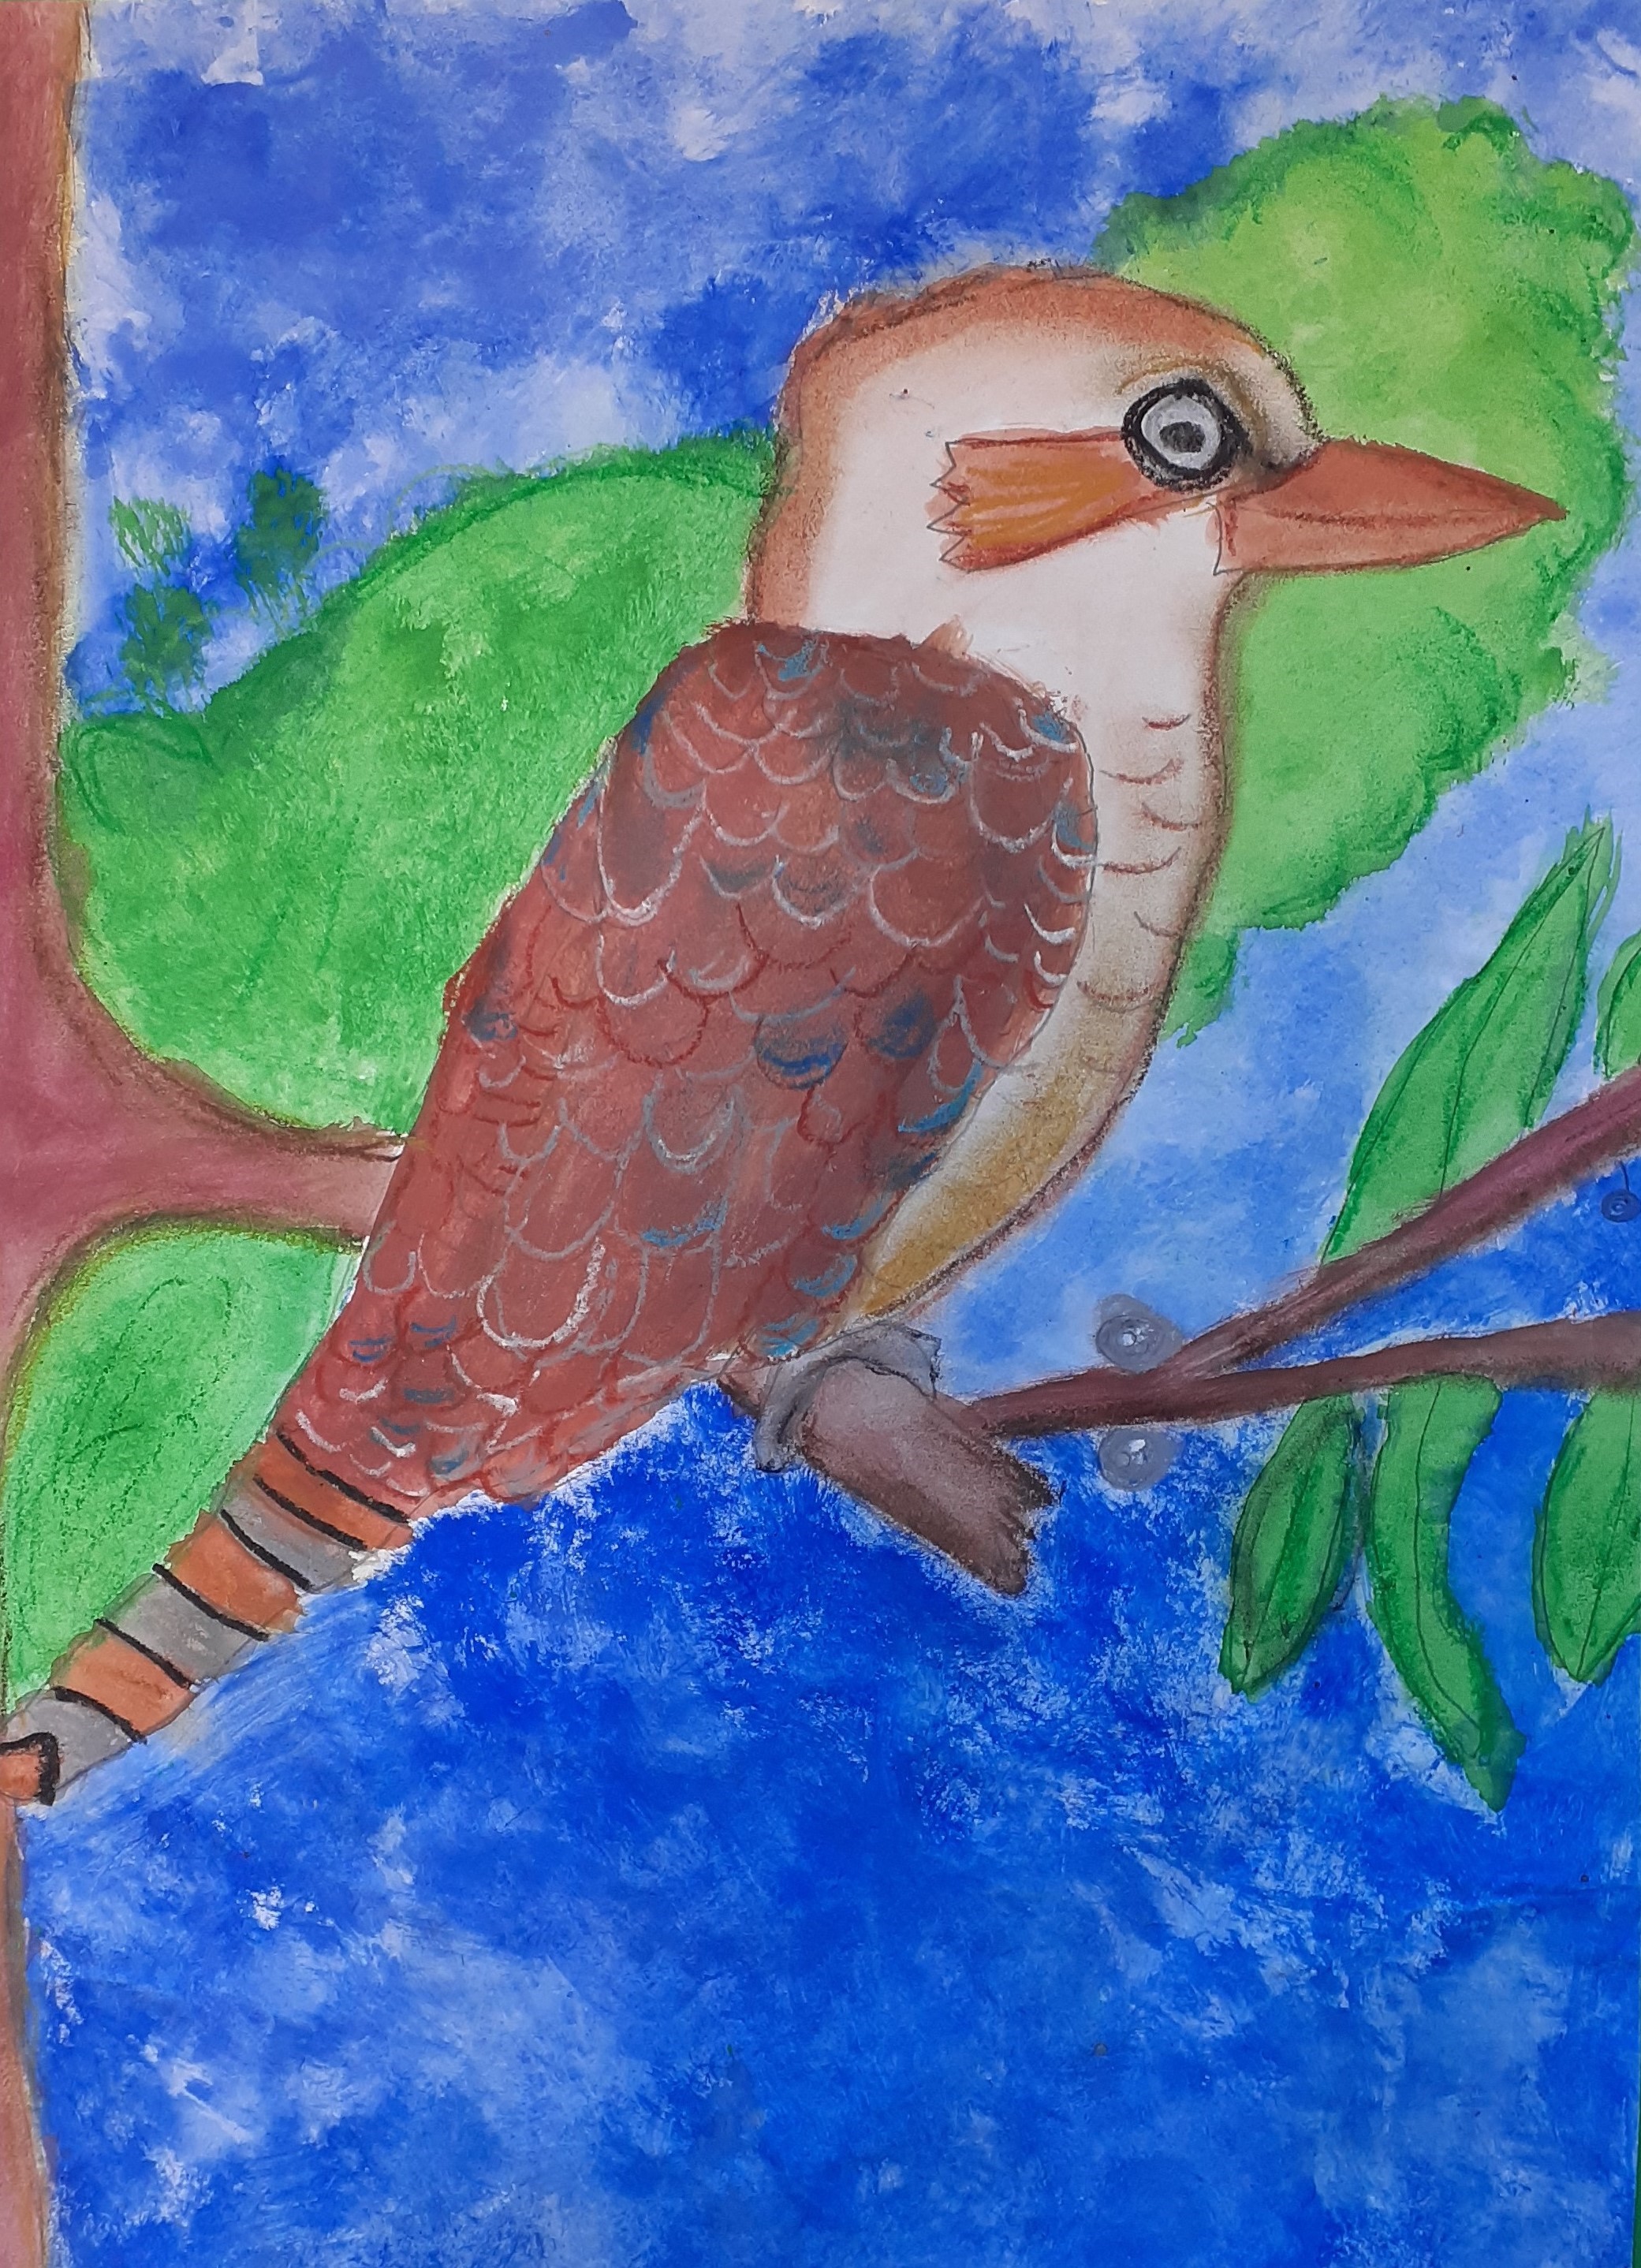 Student artwork - The Kookaburra